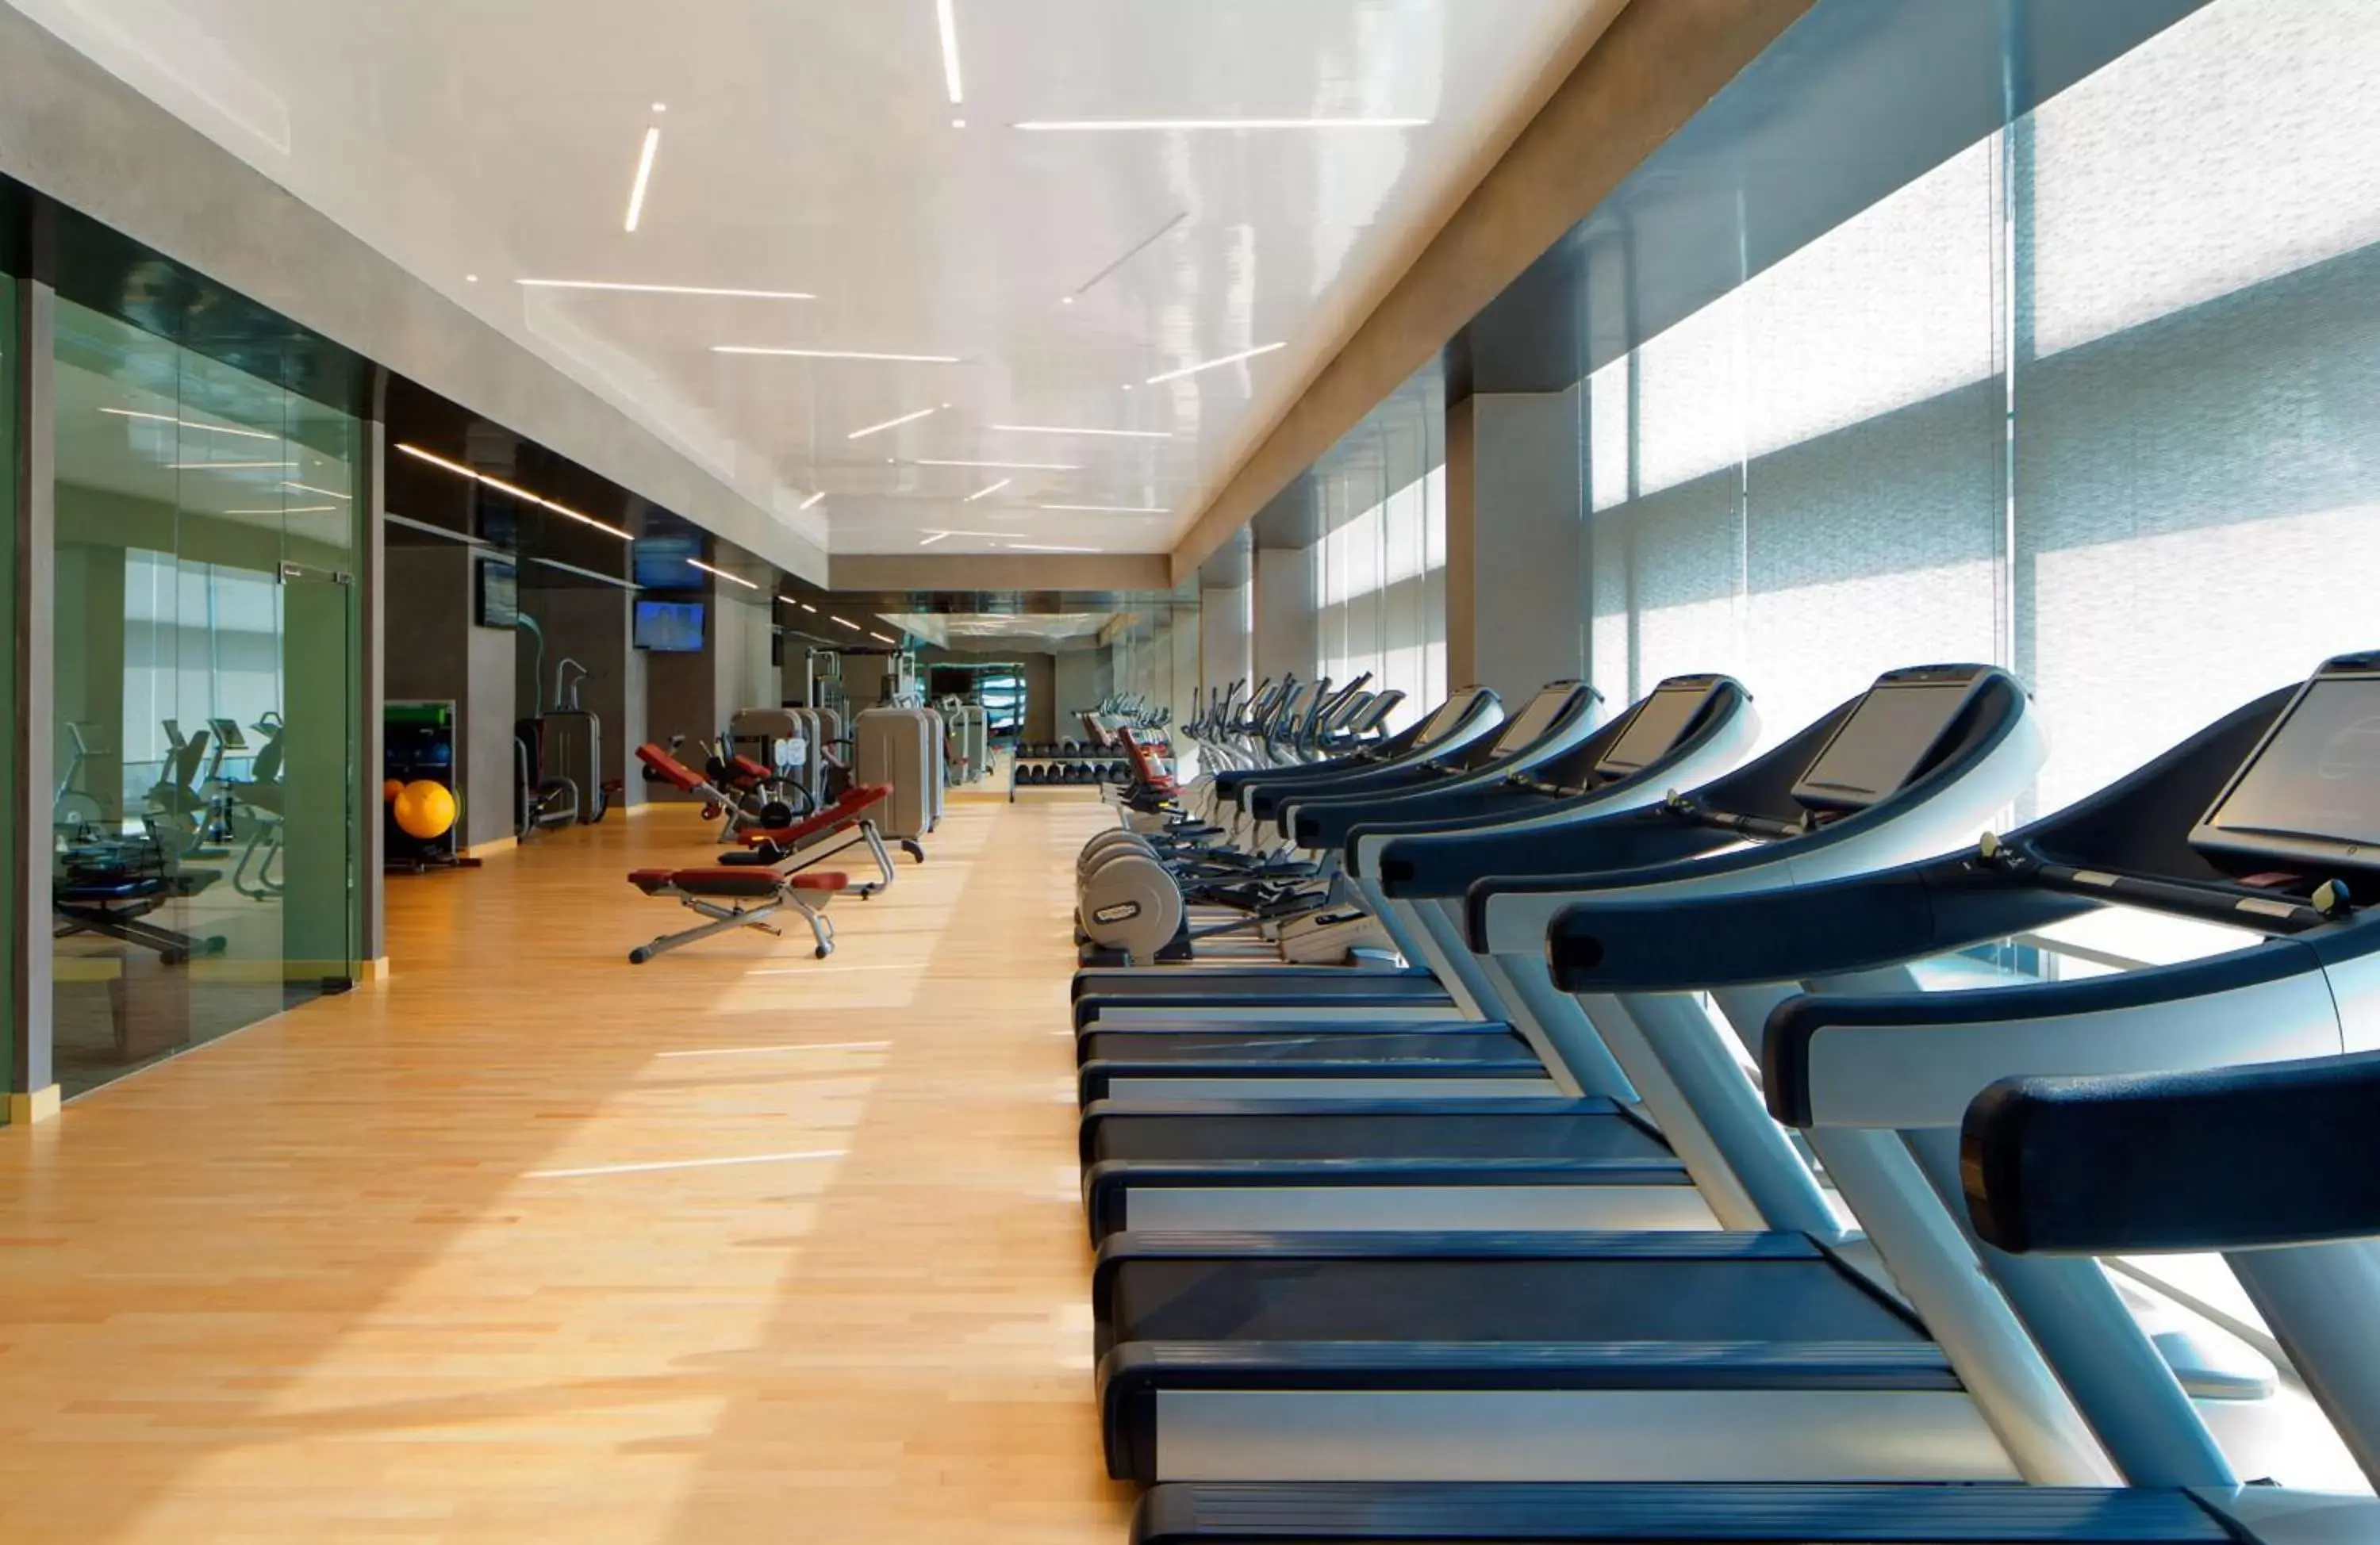 Fitness centre/facilities, Fitness Center/Facilities in Conrad Dubai